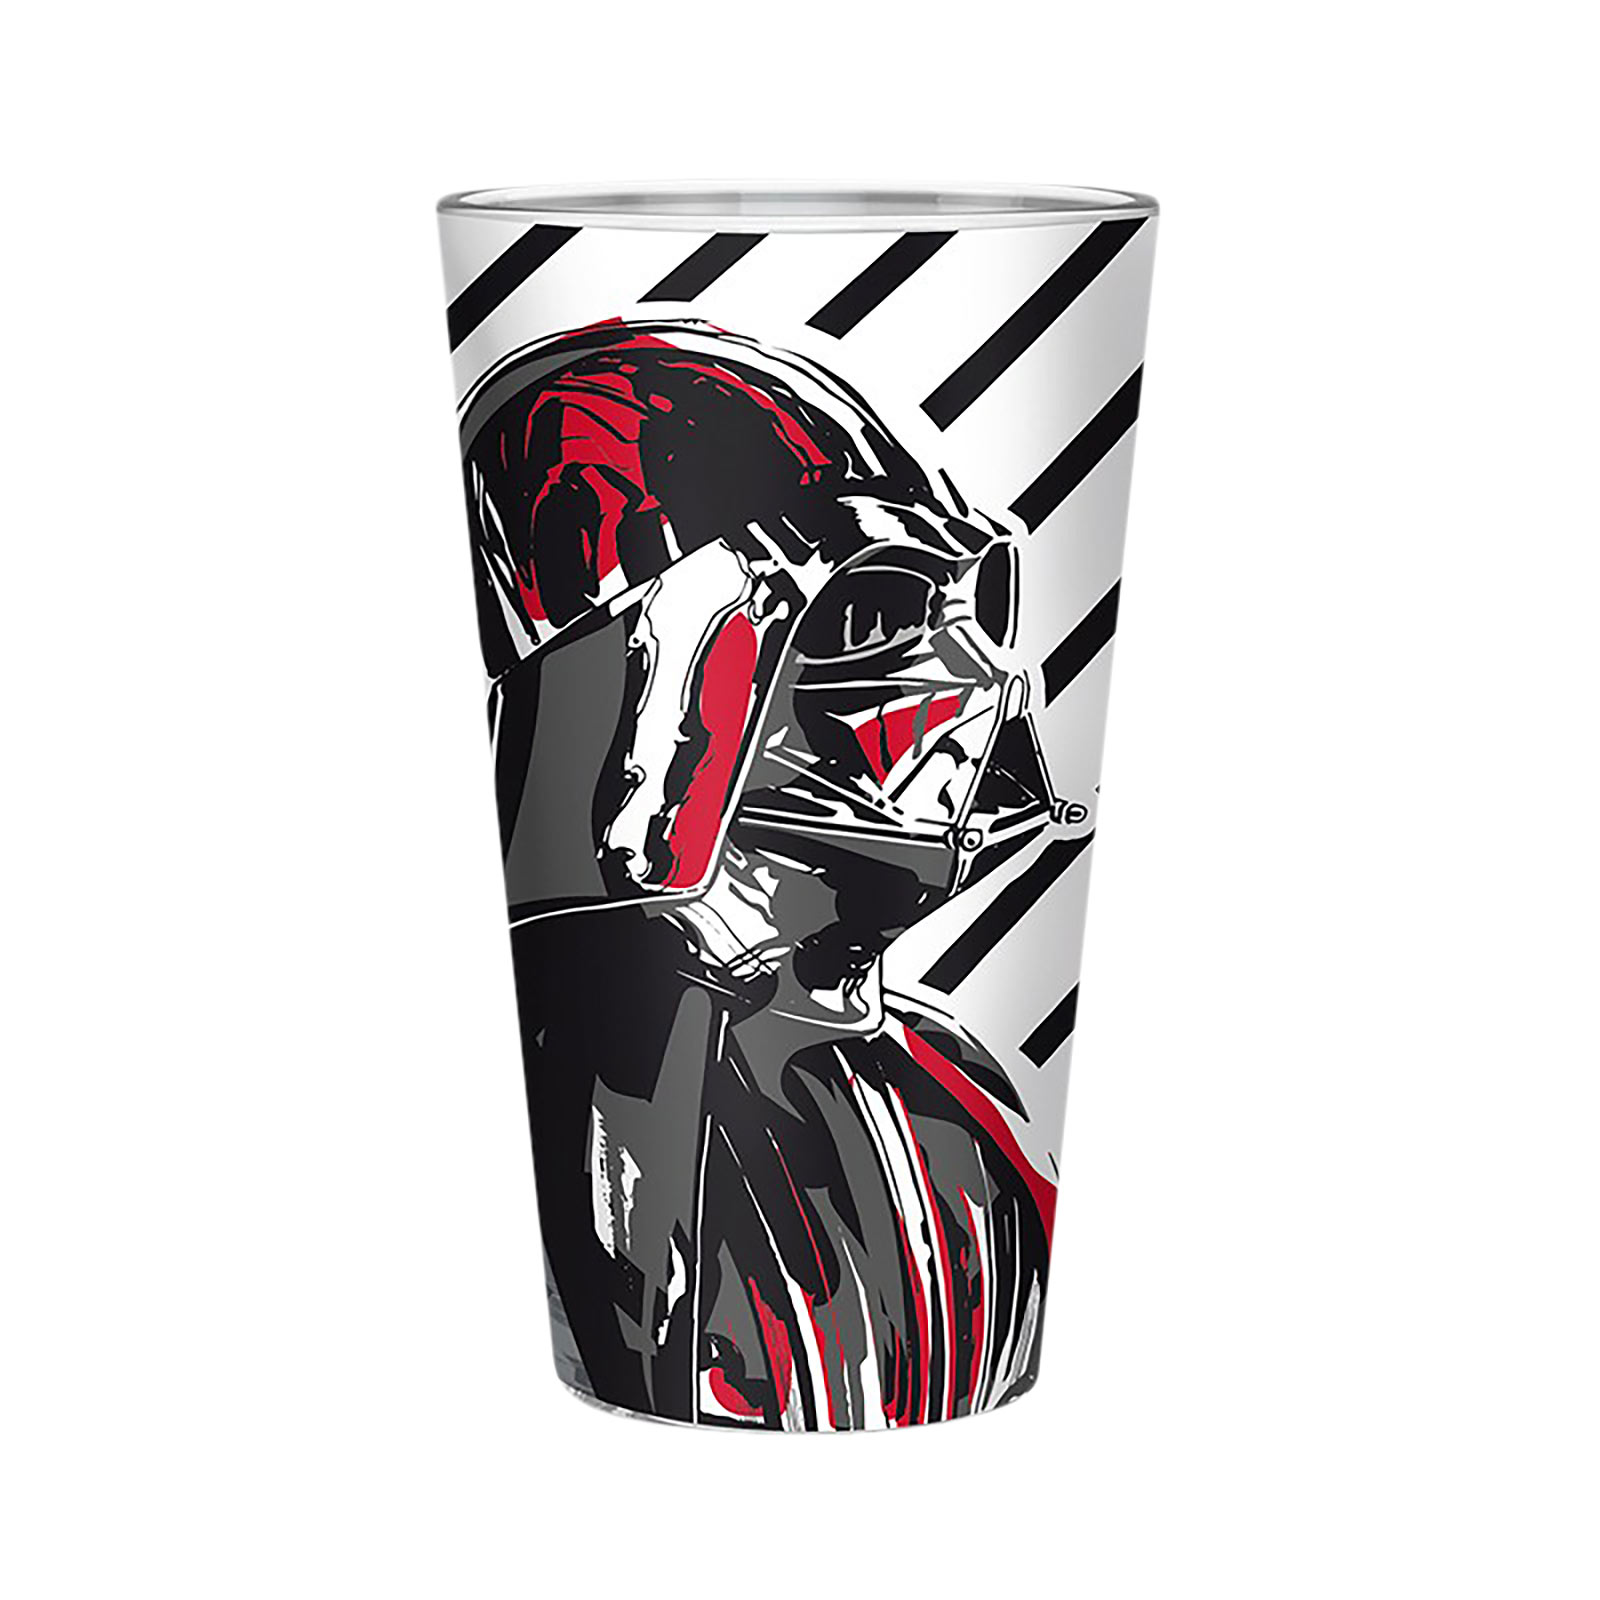 Star Wars - Darth Vader Art Glas